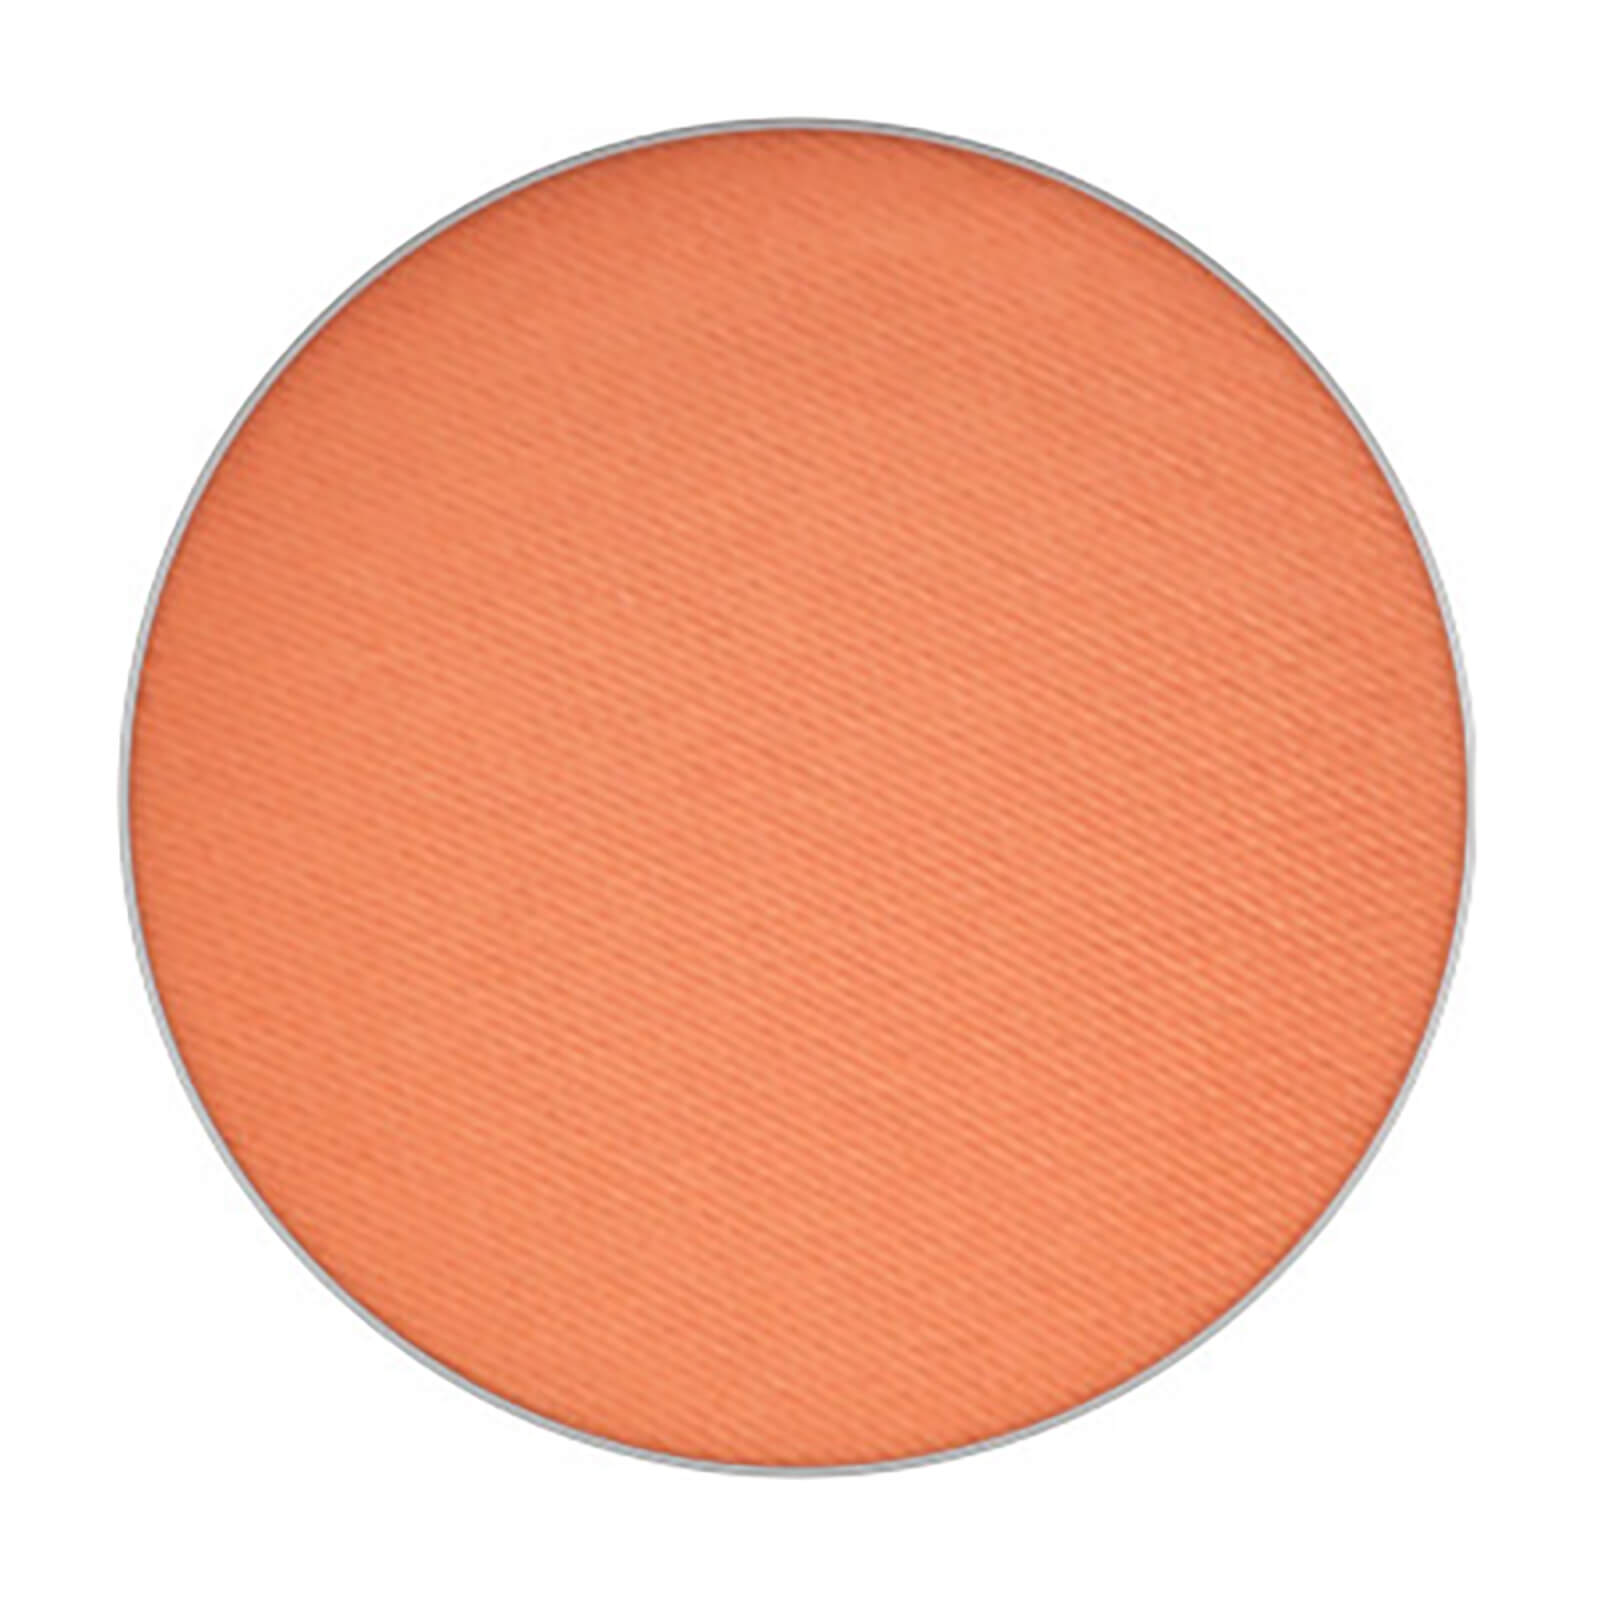 mac cosmetics - eye shadow / pro palette refill pan - rule